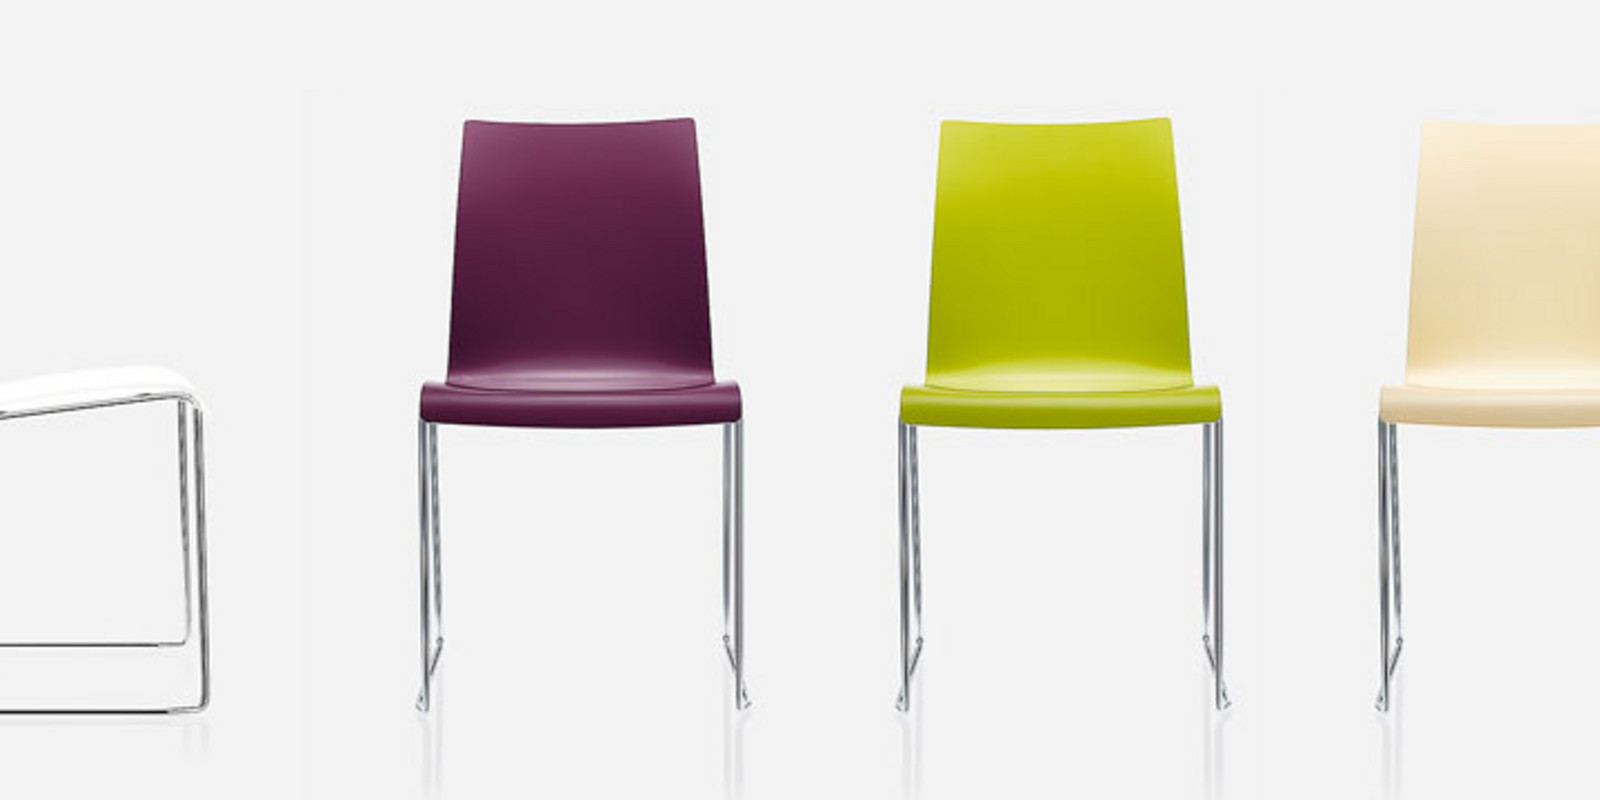 Brunner - Stühle aus hochwertigem Kunststoff, farbenfroh und pflegeleicht Bild 1